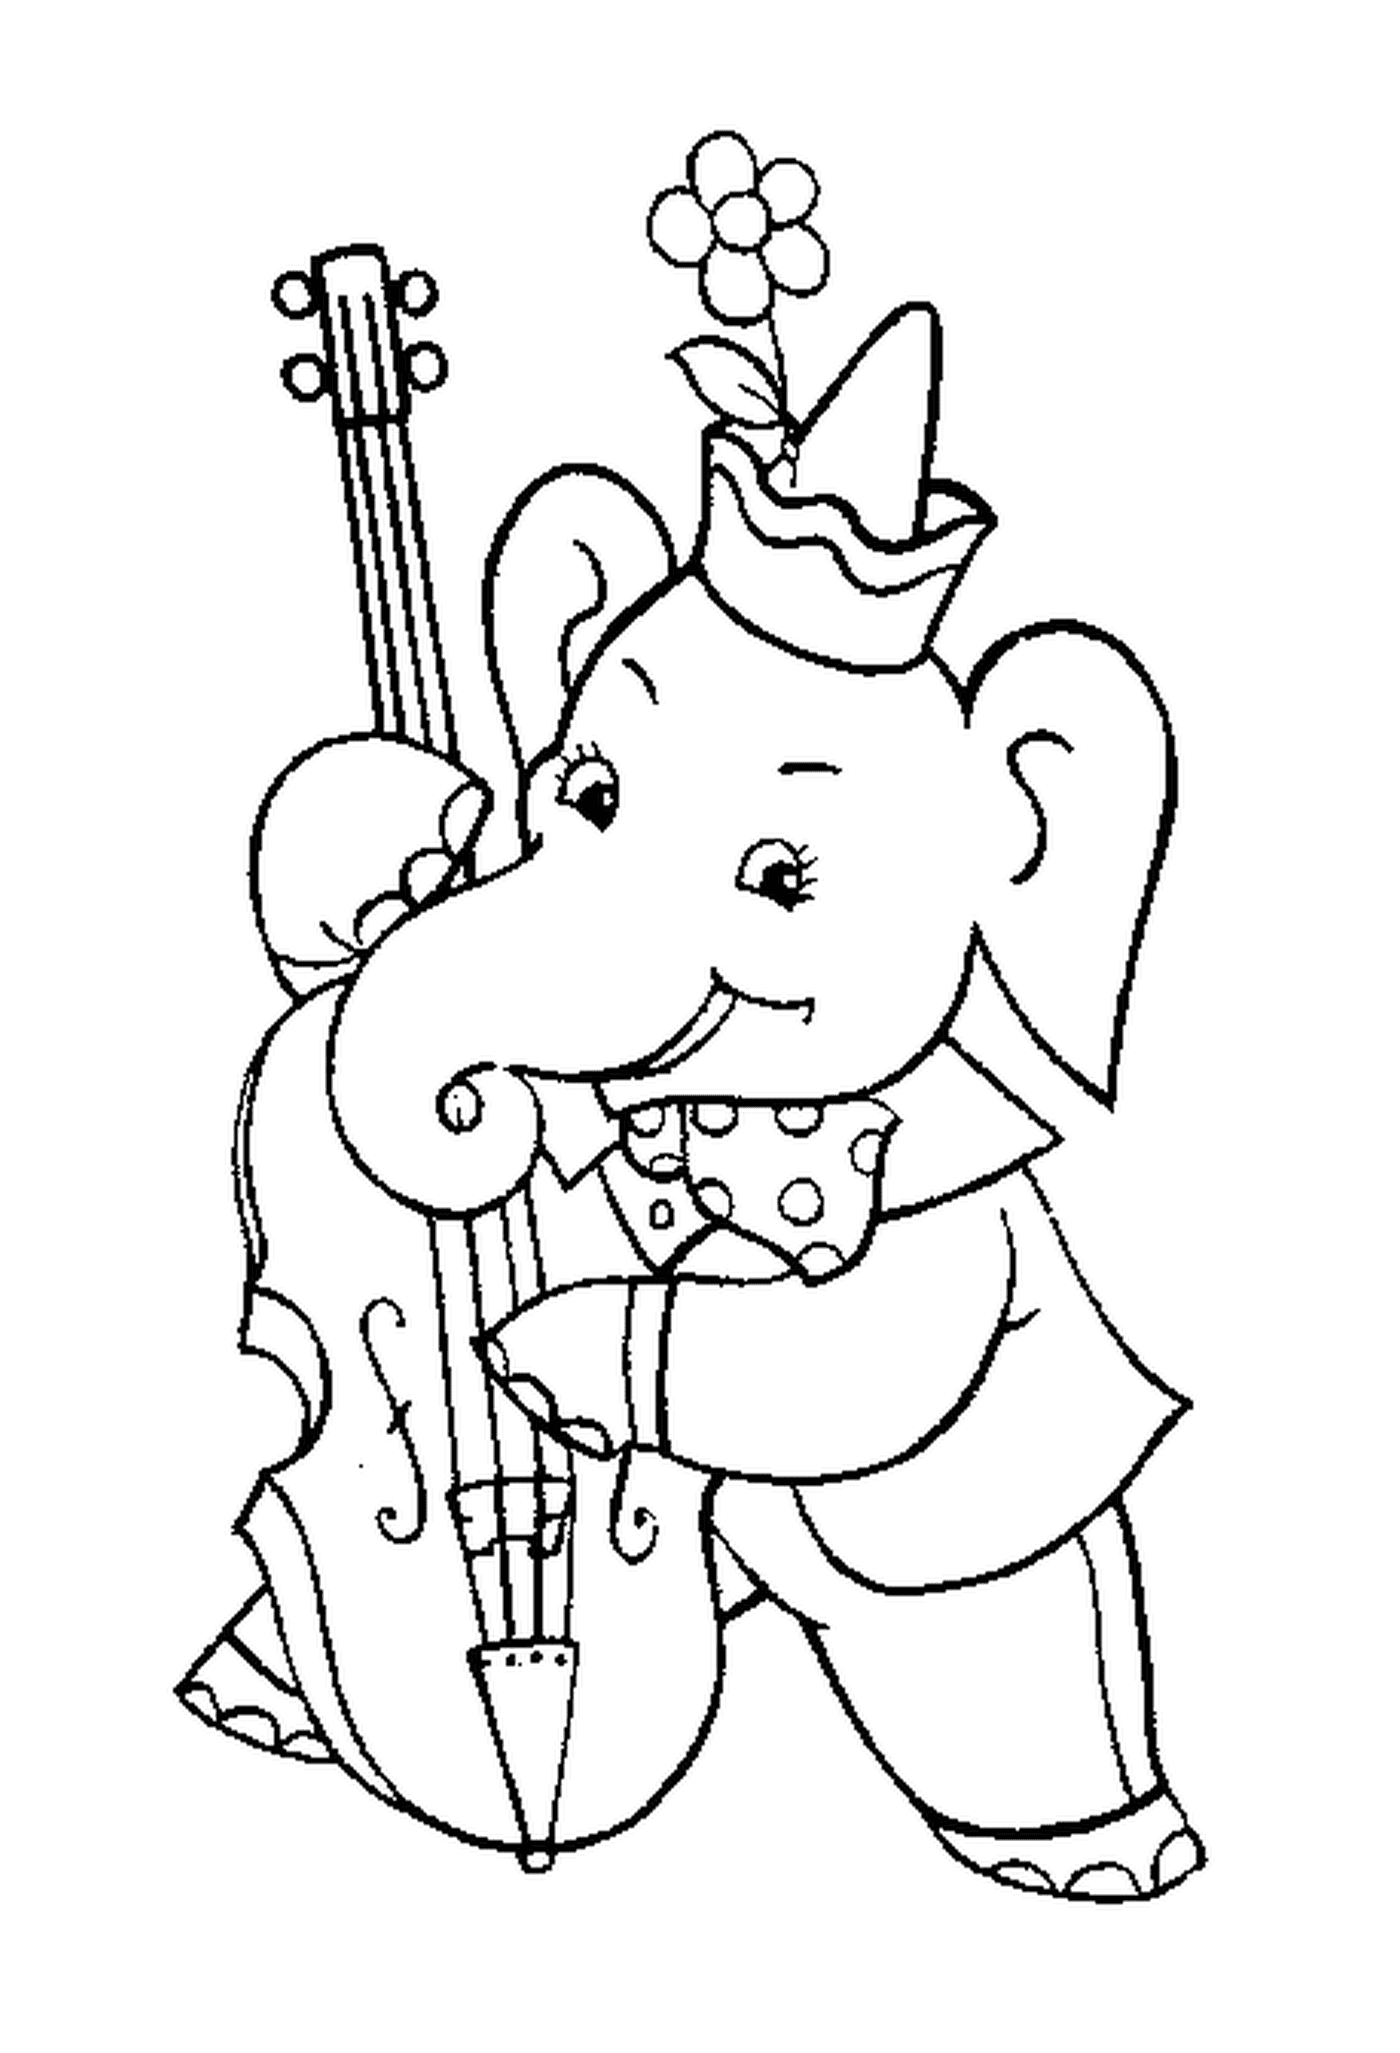  Un elefante che suona il violoncello 